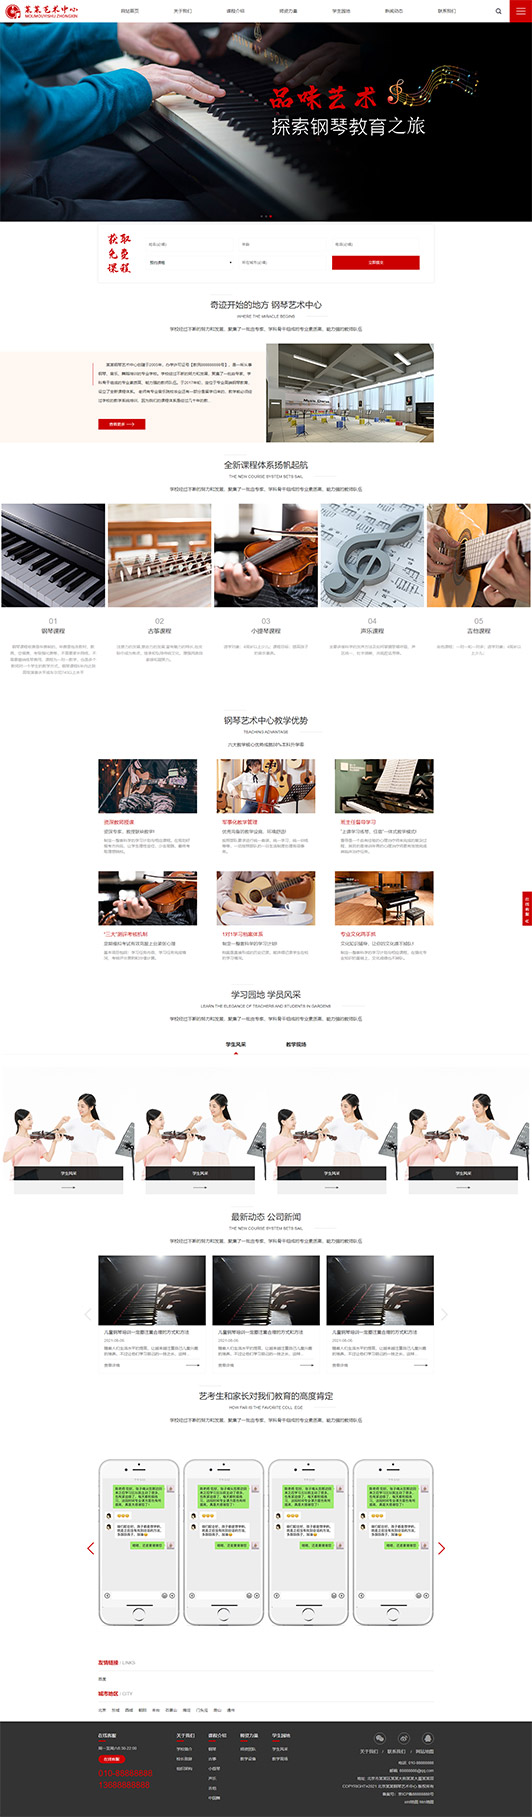 西安钢琴艺术培训公司响应式企业网站